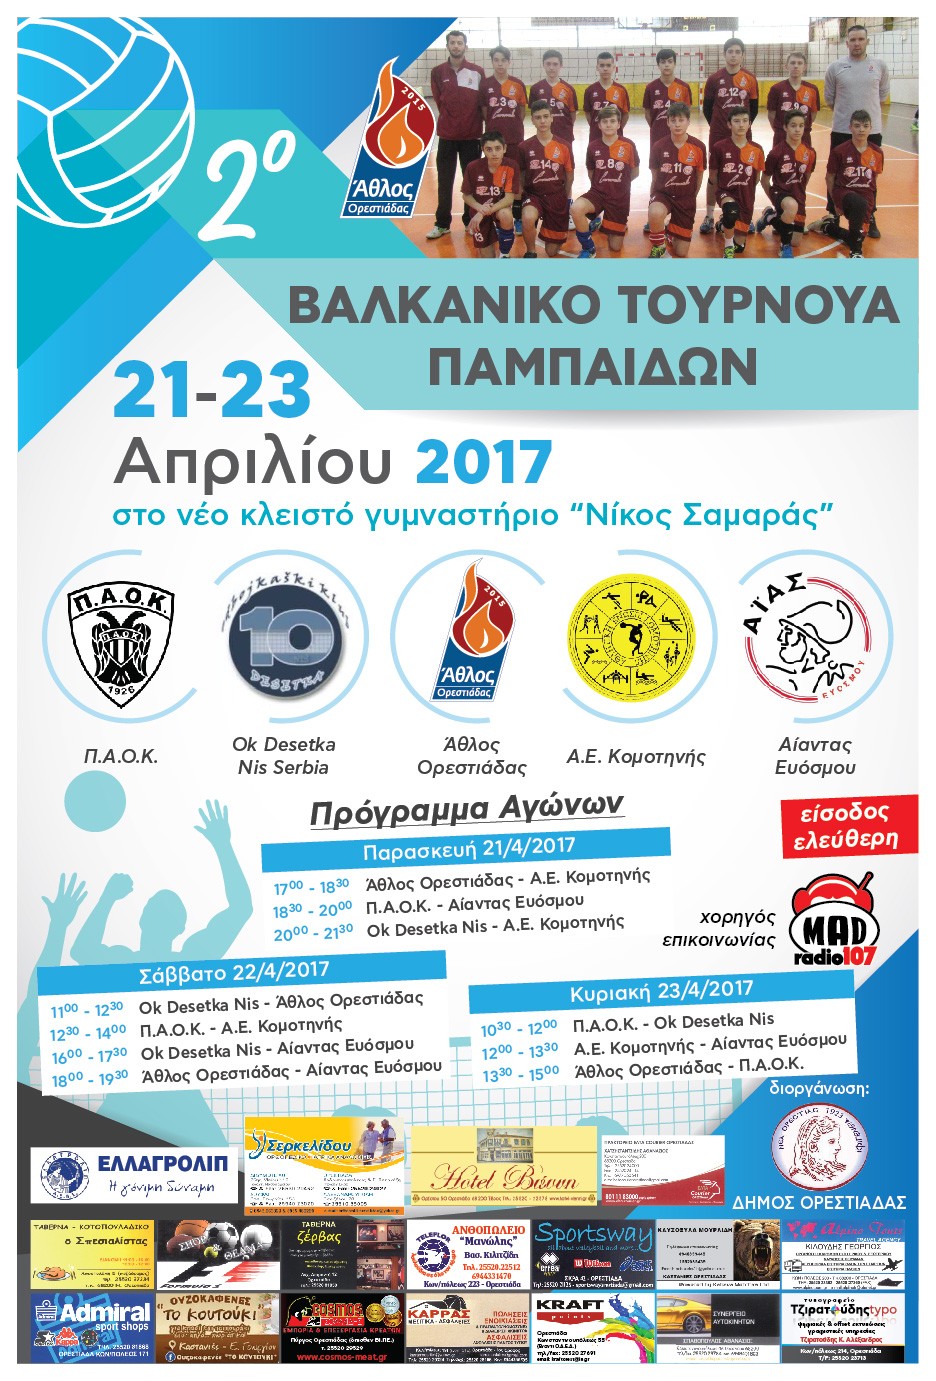 2ο Βαλκανικό Τουρνουά Βόλεϊ Παμπαίδων